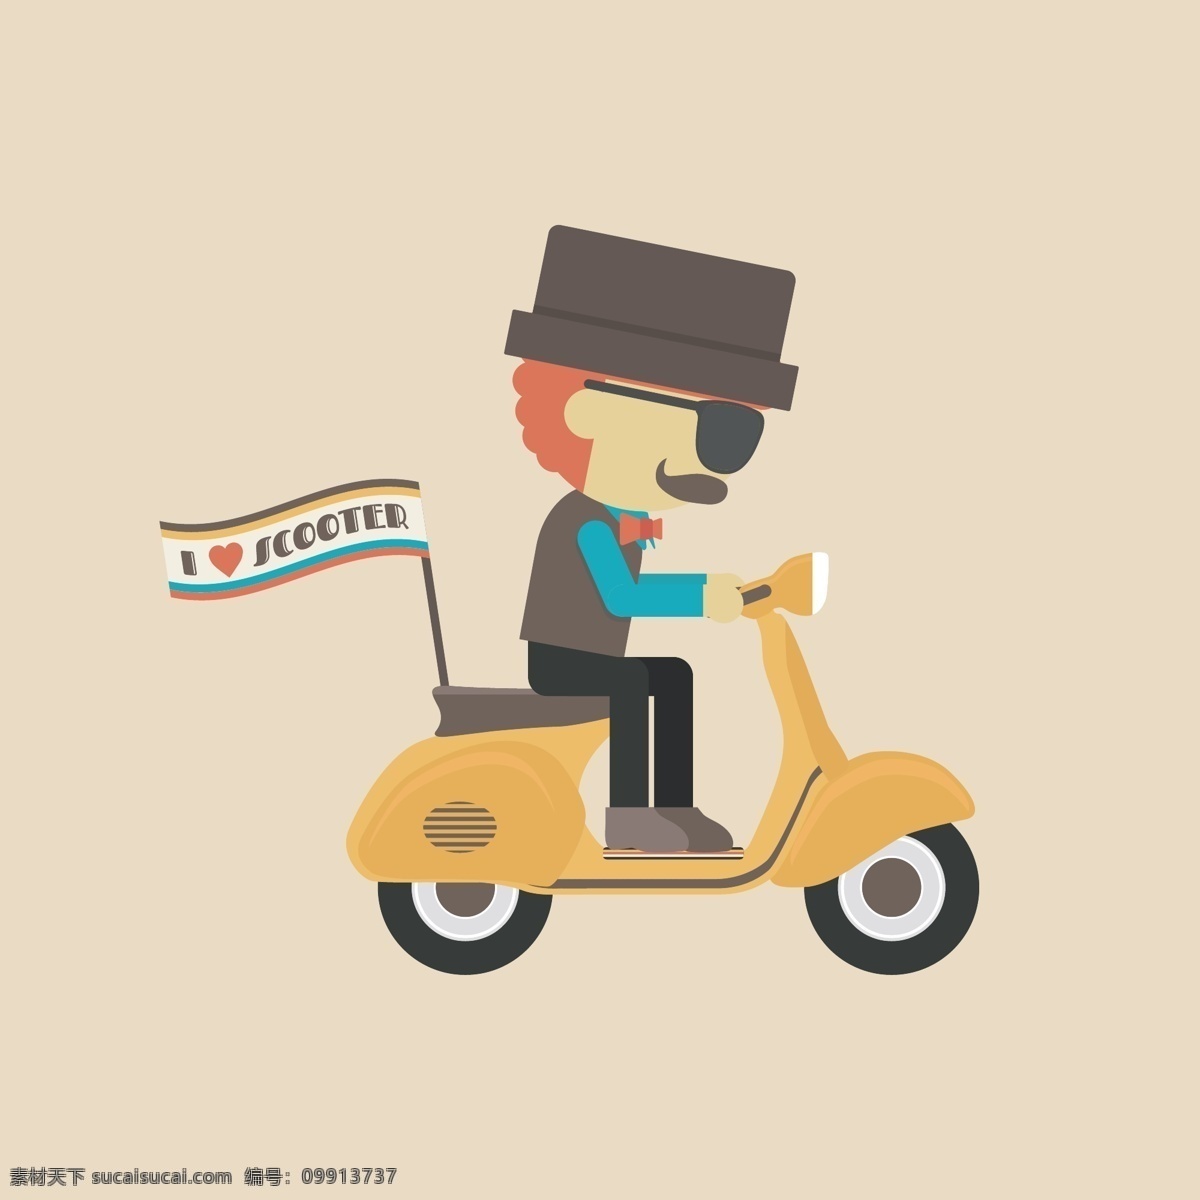 男子 辆 摩托车 背景 设计人 色彩 壁纸 帽子 胡子 男孩 男人 太阳镜 丰富多彩 颜色 胡蜂 滑板车 多彩的背景 彩色的